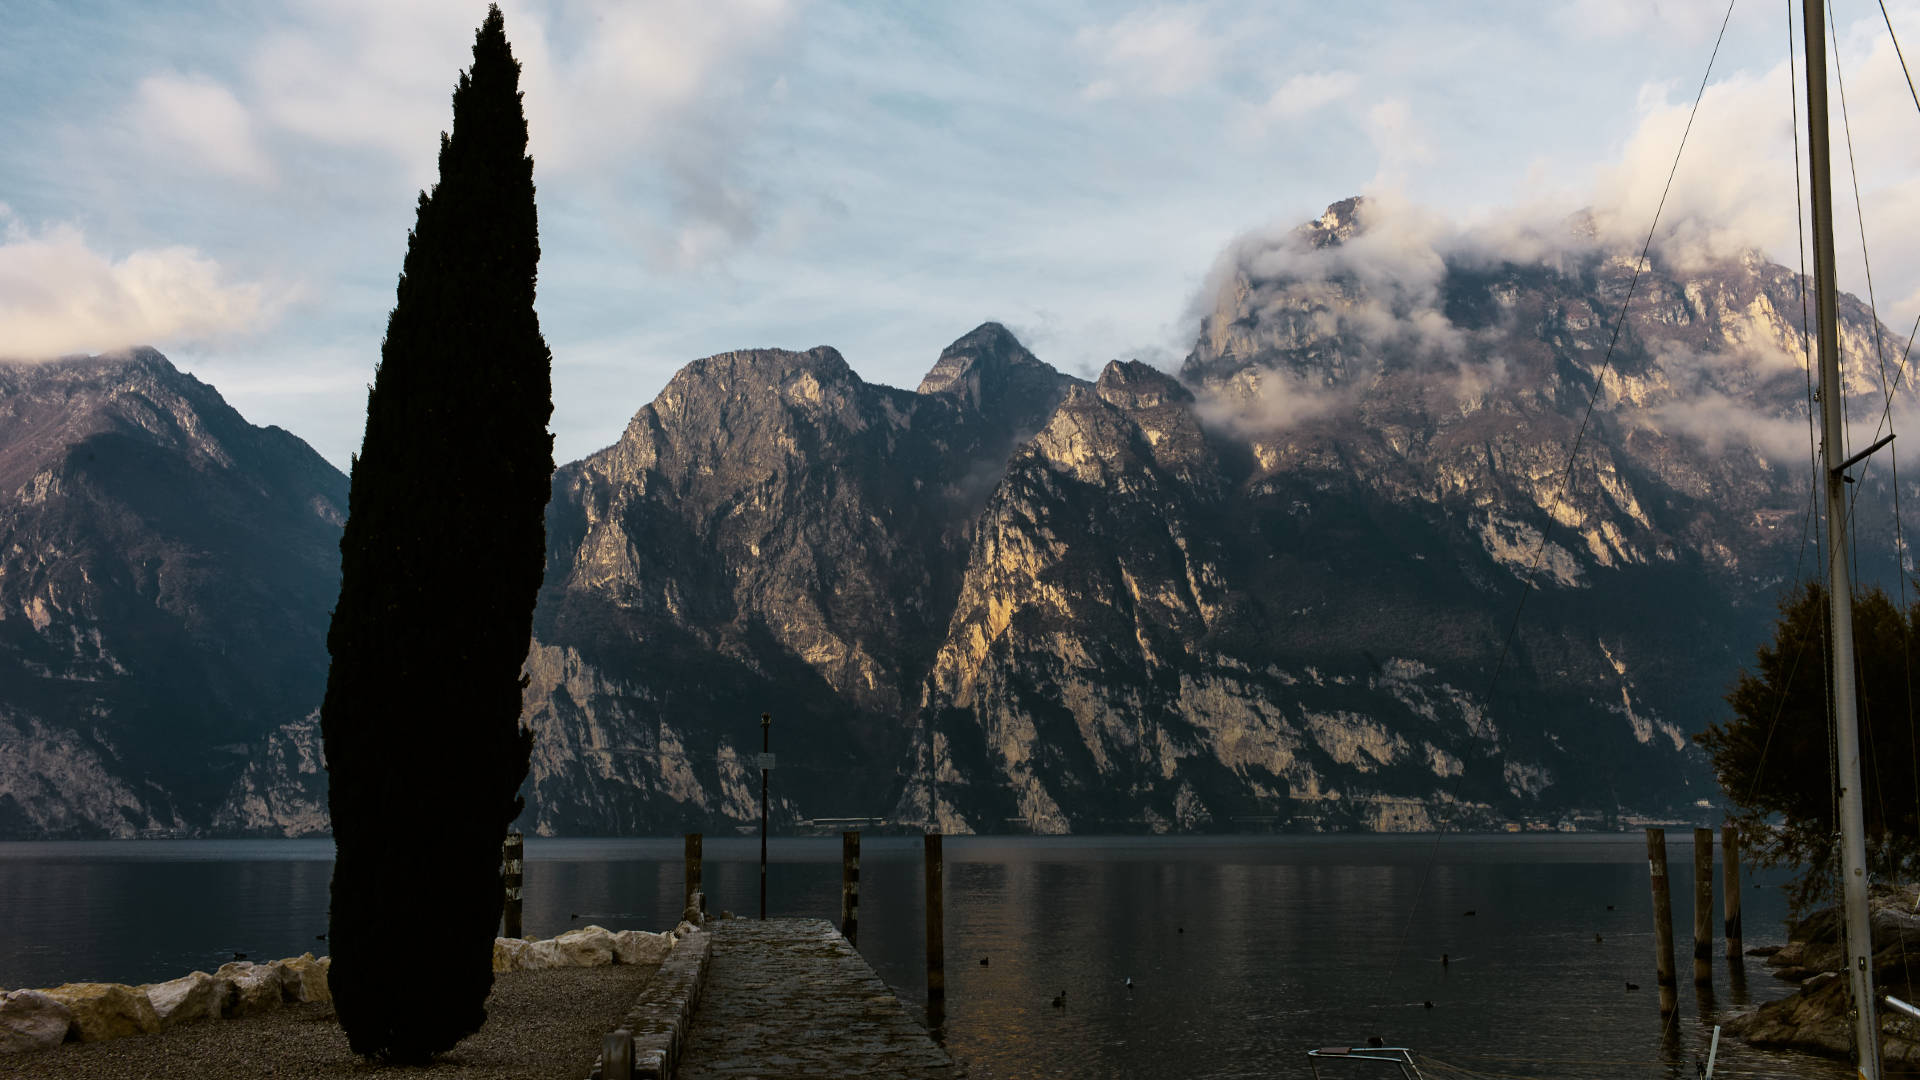 Faszination Lago di Garda.